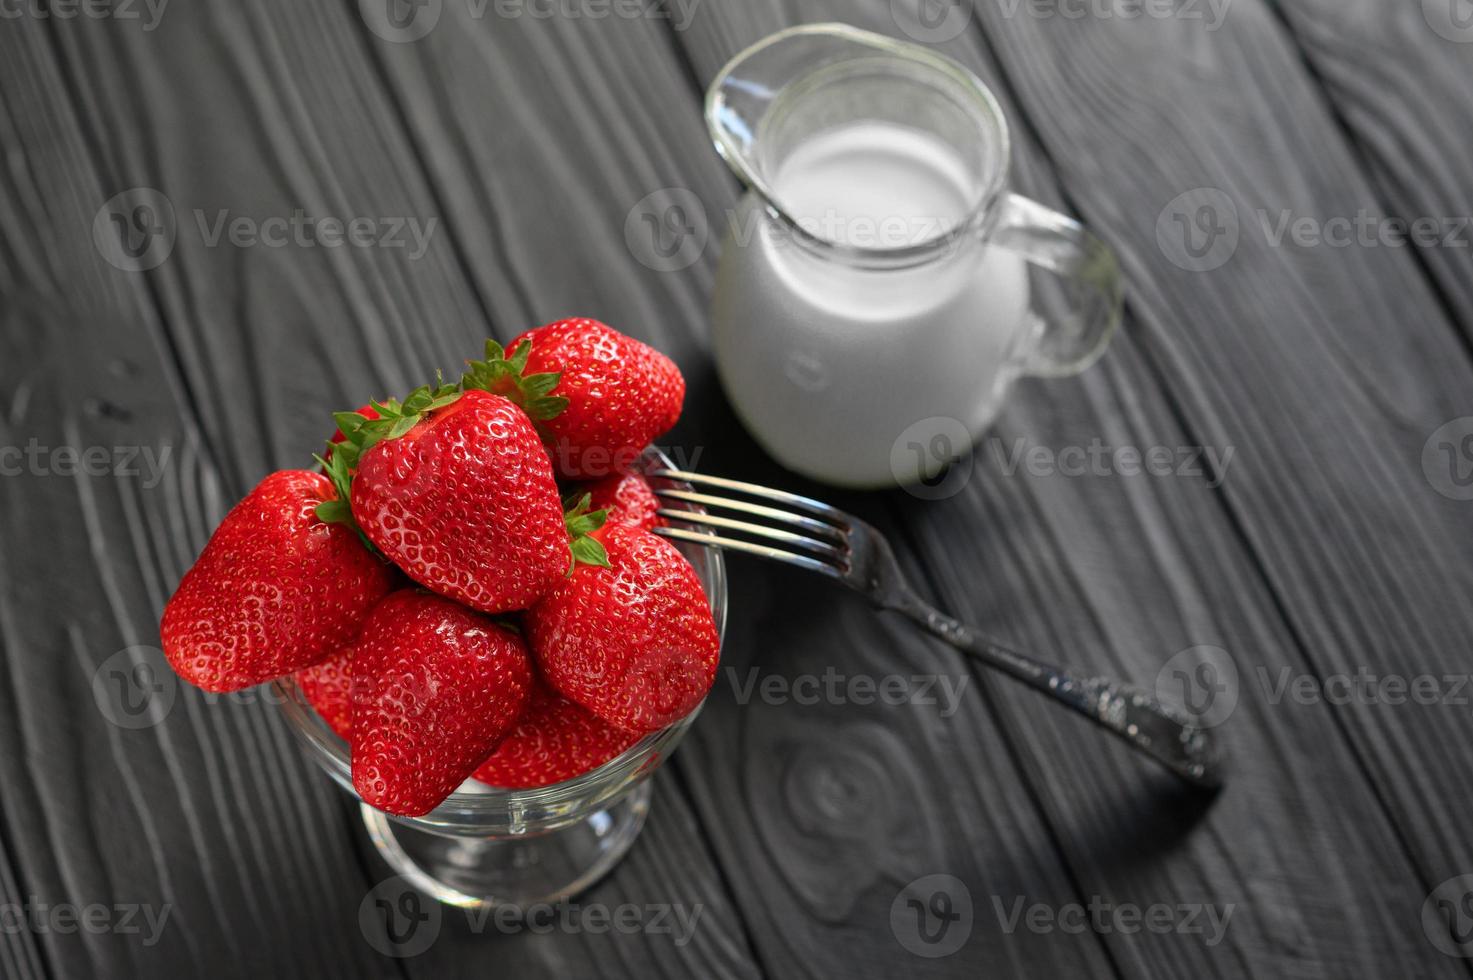 en skål med röda saftiga jordgubbar på rustika träbord. hälsosam och diet snack mat koncept. foto